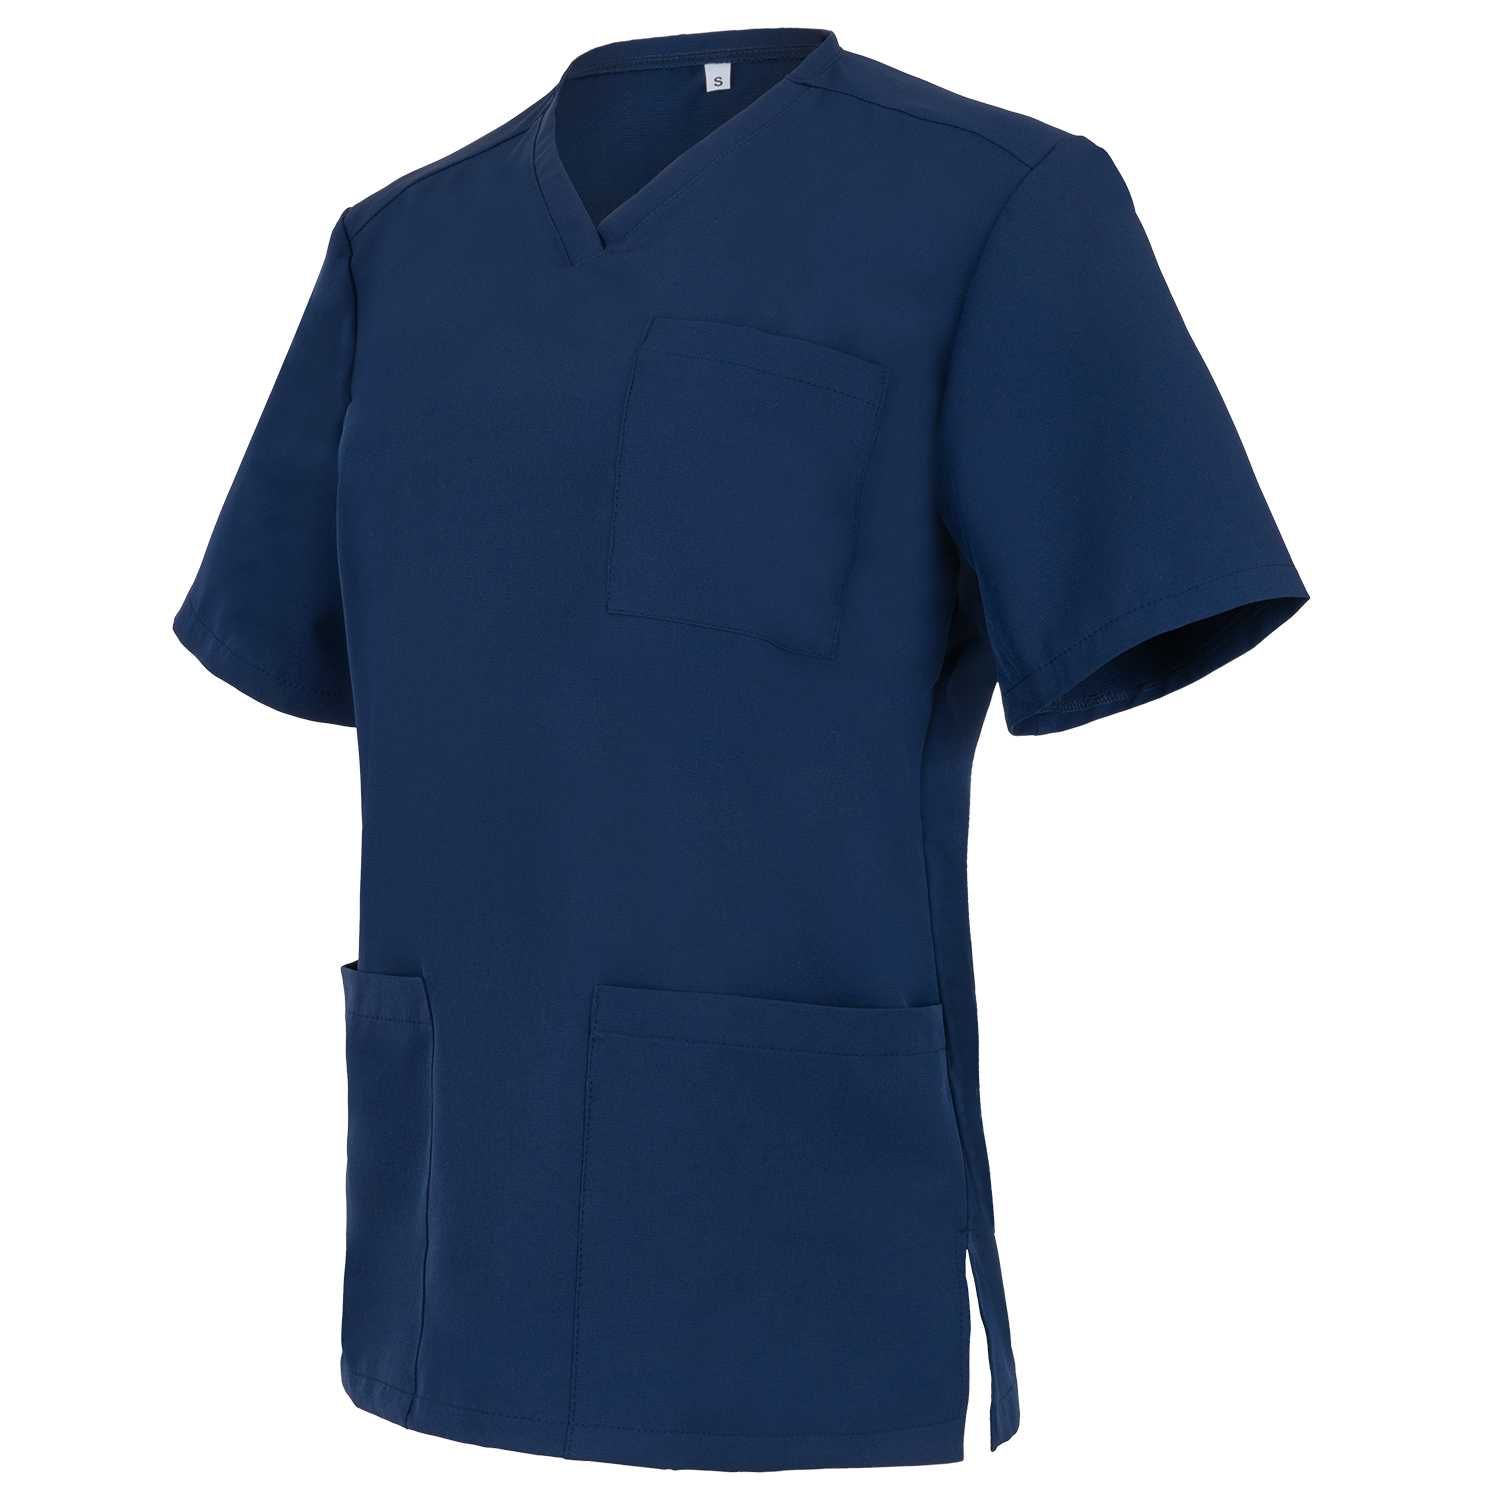 Bluza Medyczna Fresh Granatowa Producent Komplet medyczny Rozmiar XL